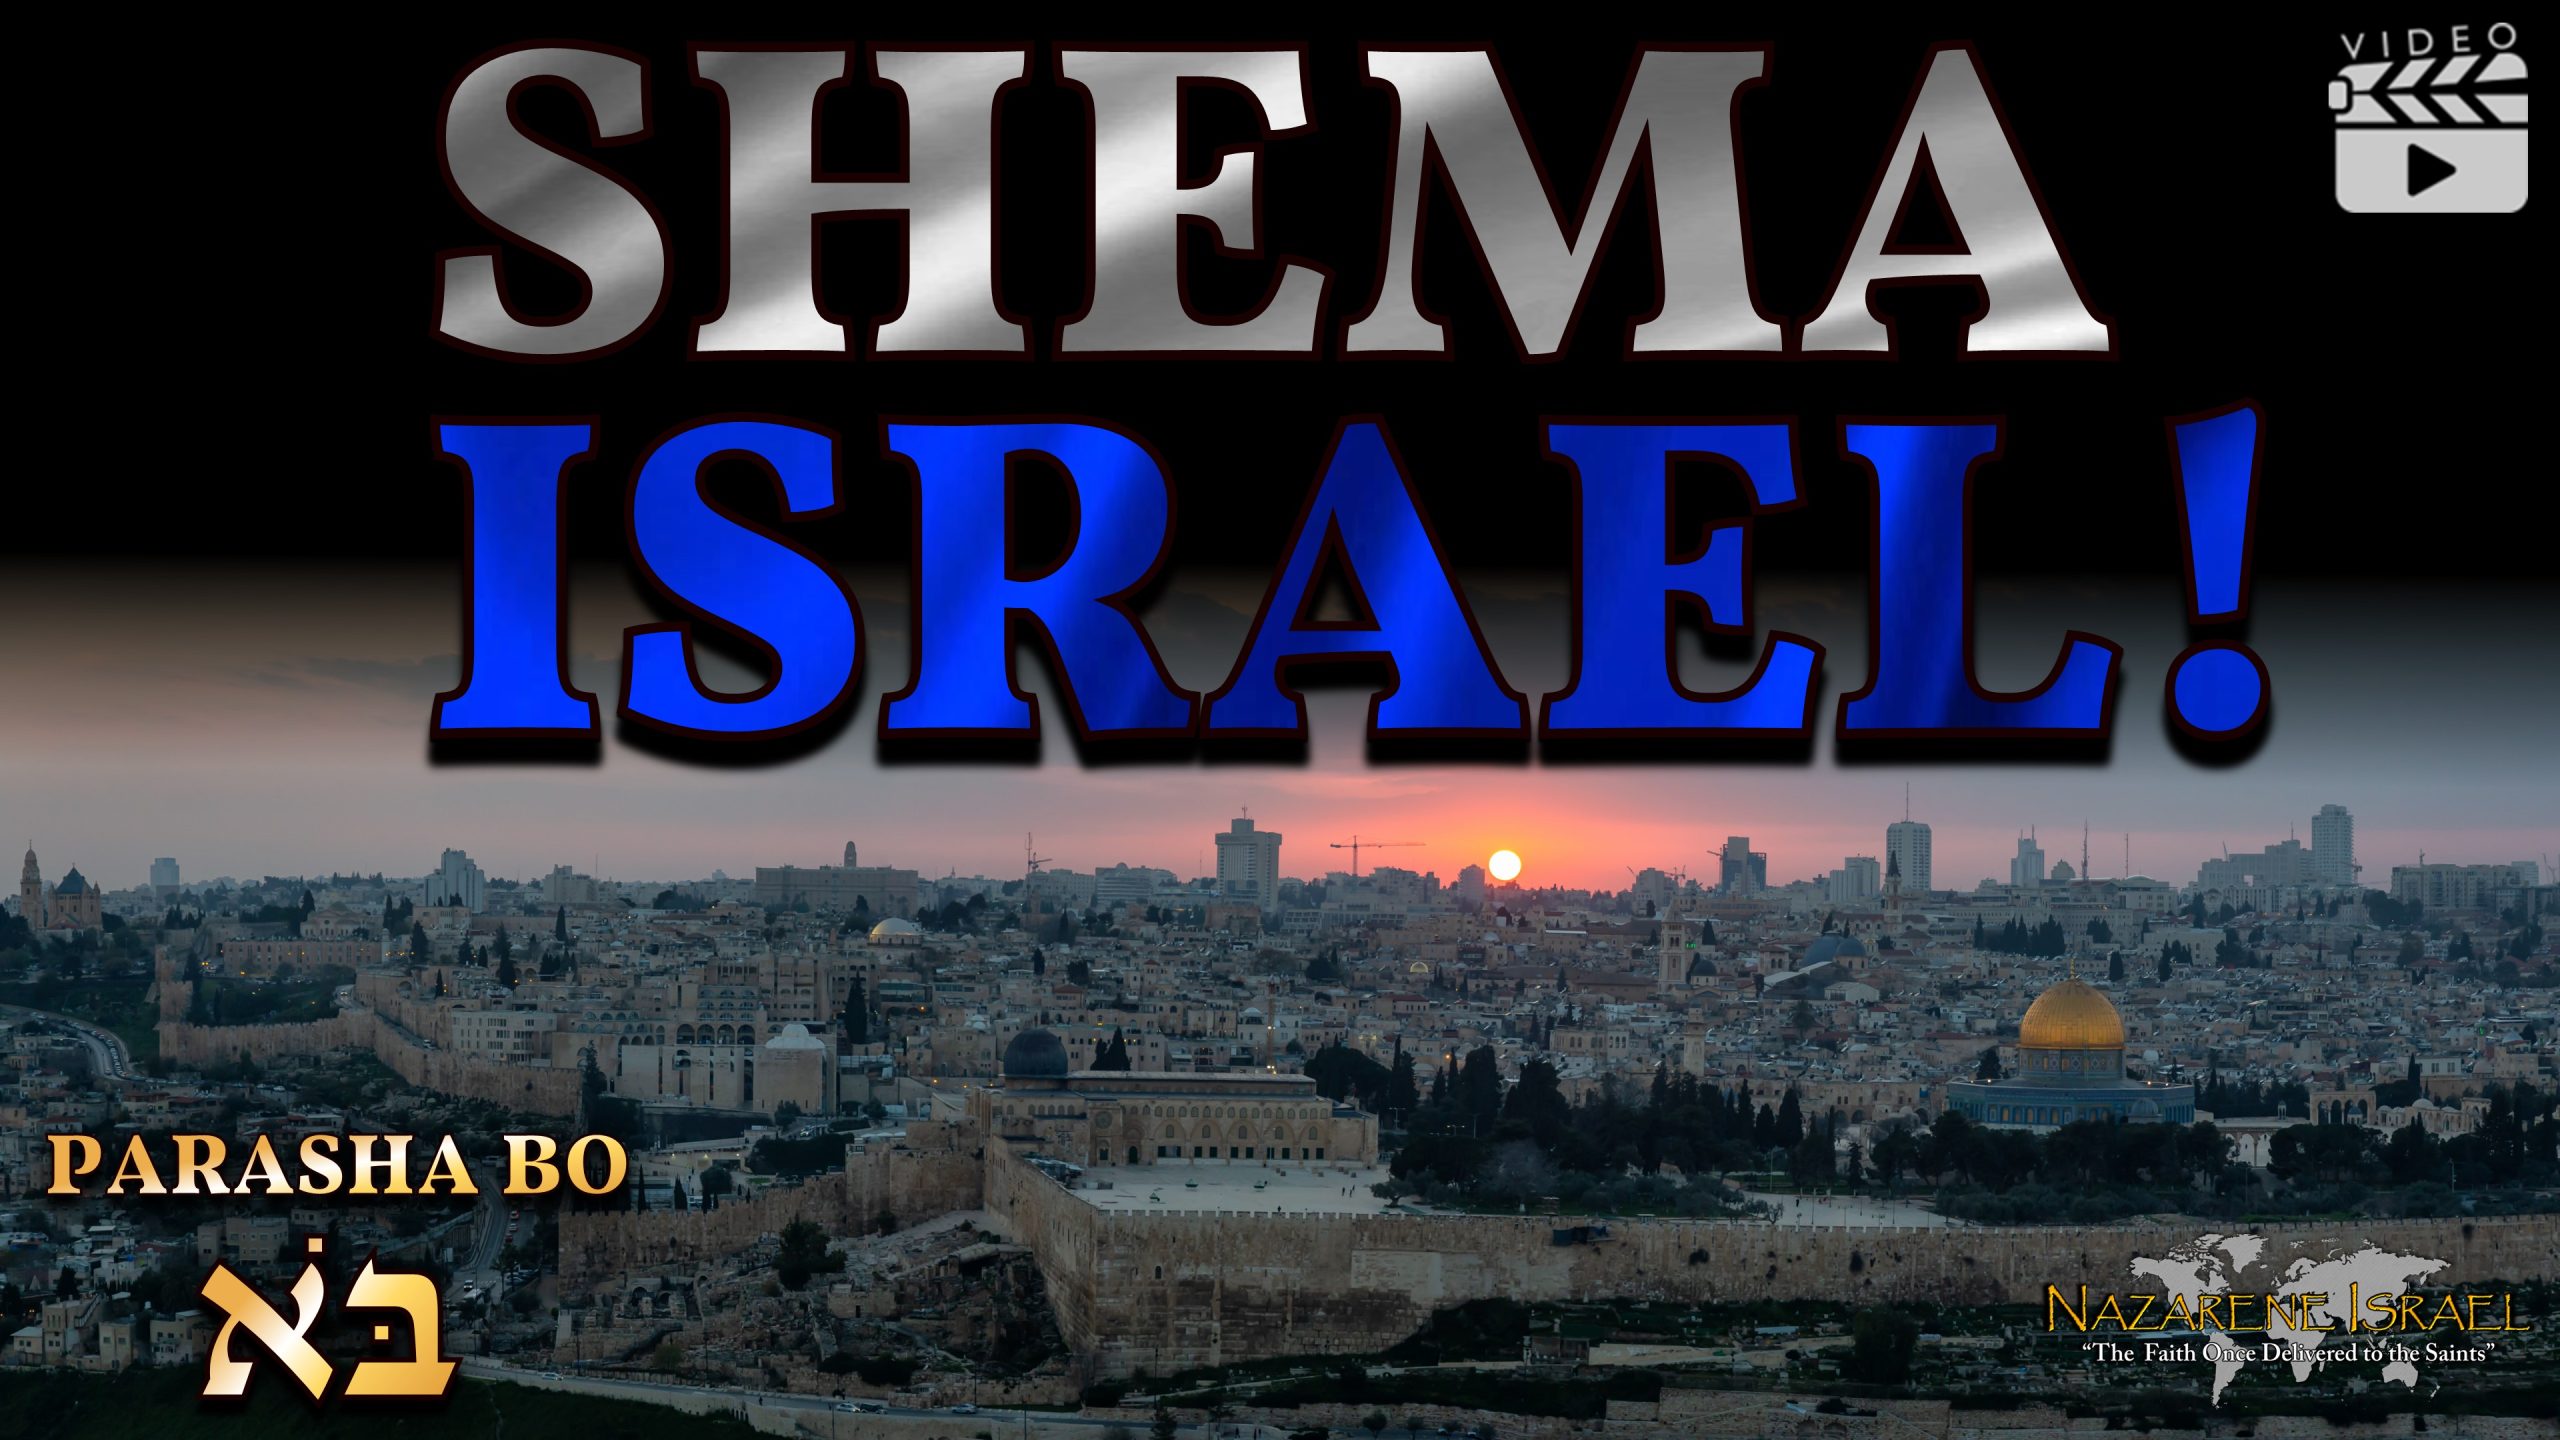 Parasha Bo 2023 – “Shema Israel!”